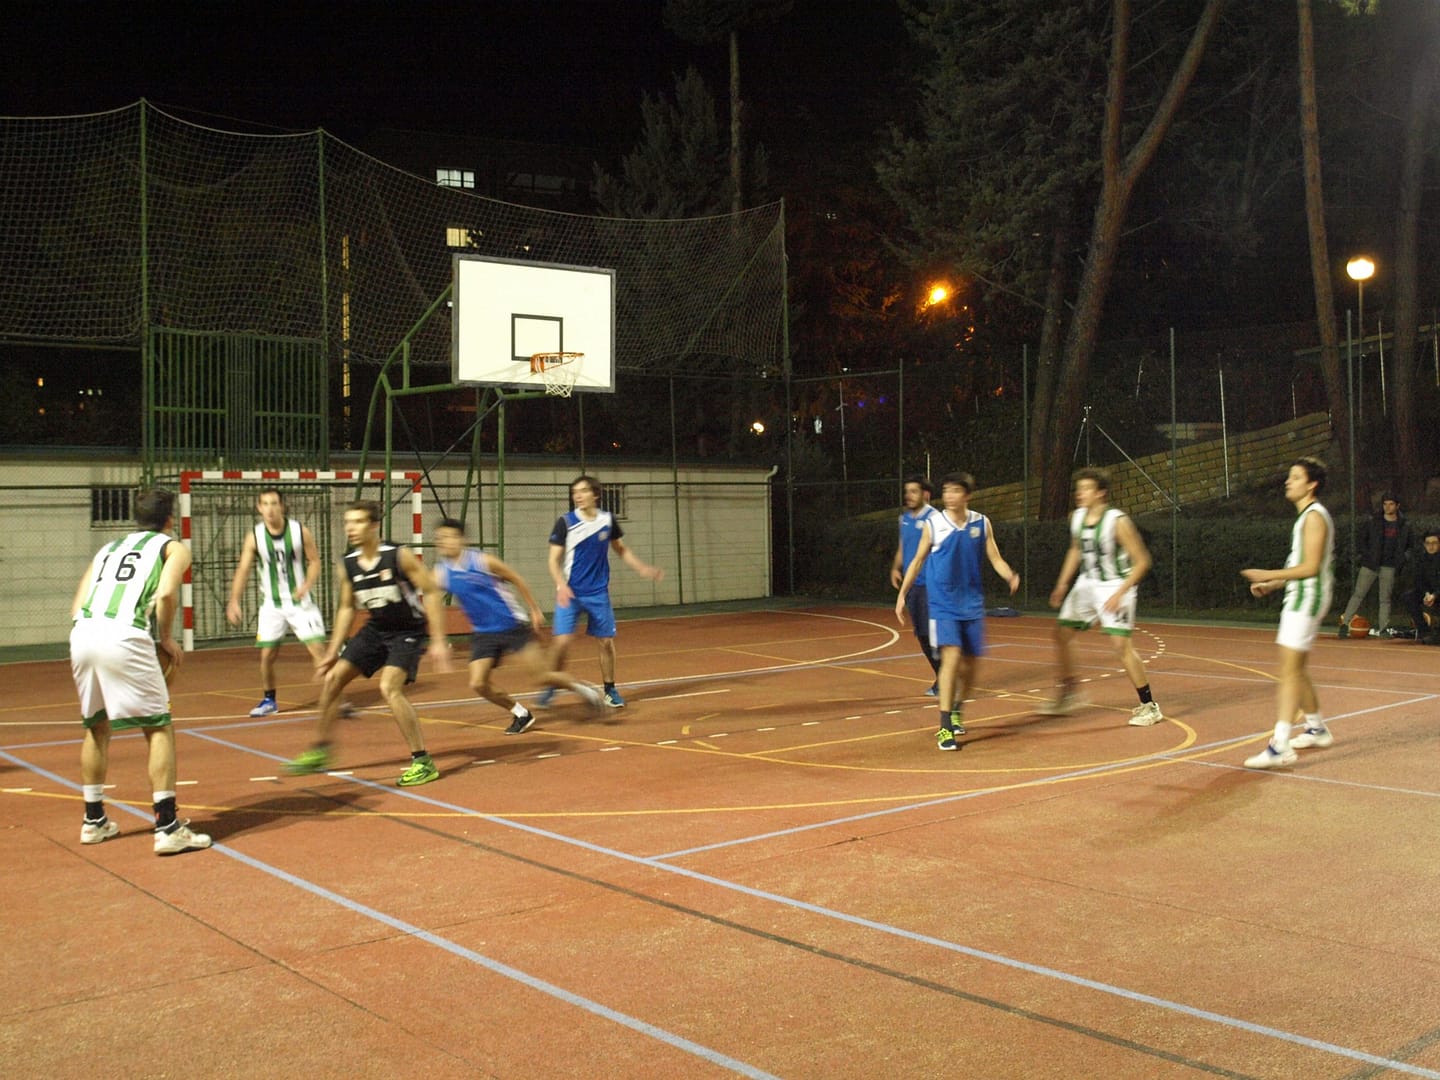 Final en Baloncesto del Torneo Deportivo organizado por la Asociación para Actividades Conjuntas de Colegios Mayores de Madrid en el cual se enfrentaron el Colegio Mayor Jaime del Amo y el Colegio Mayor Alcalá.